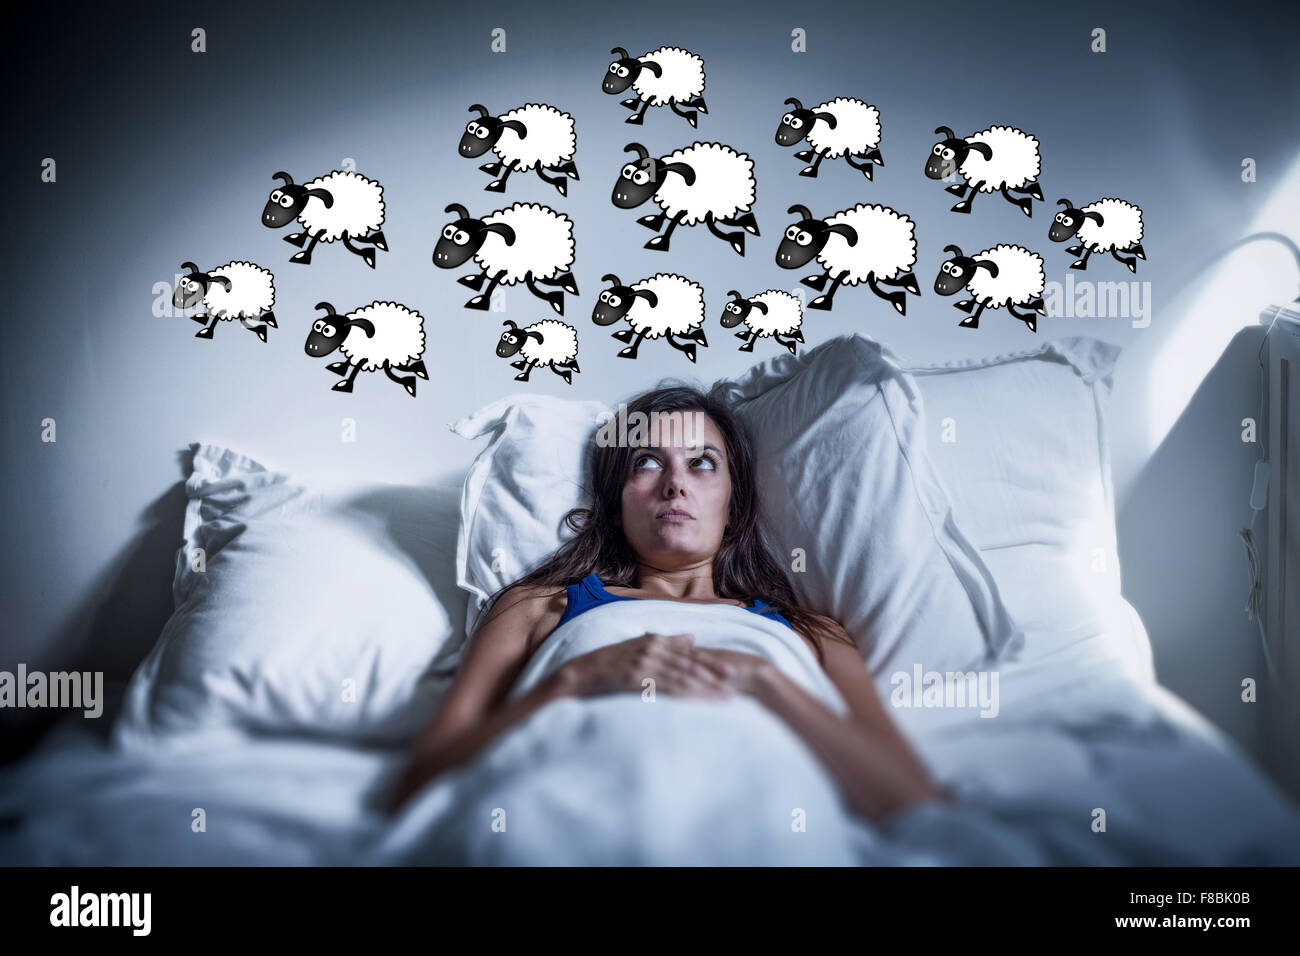 Insomnia concept. Stock Photo